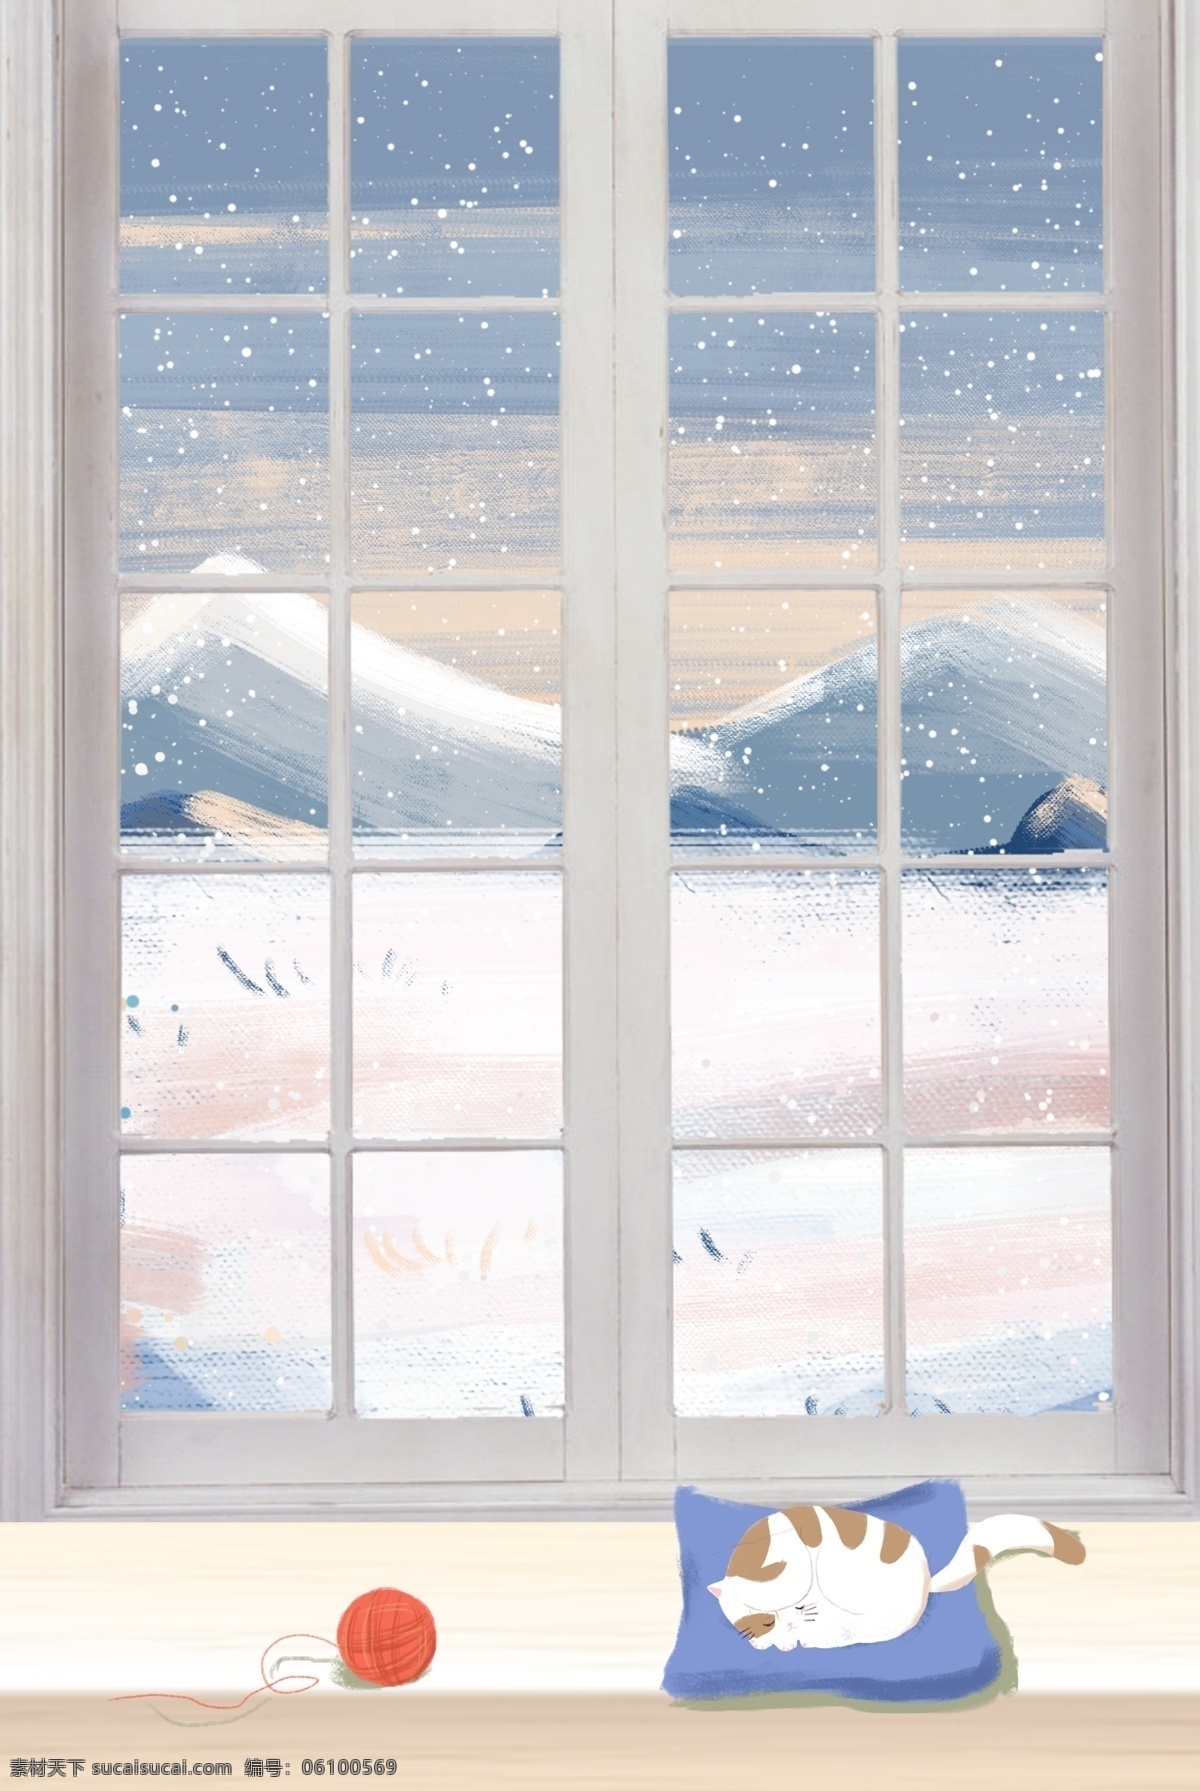 霜降 大雪 窗 享受 静谧 时光 背景 海报 传统 二十四节气 窗边 毛线球 猫咪